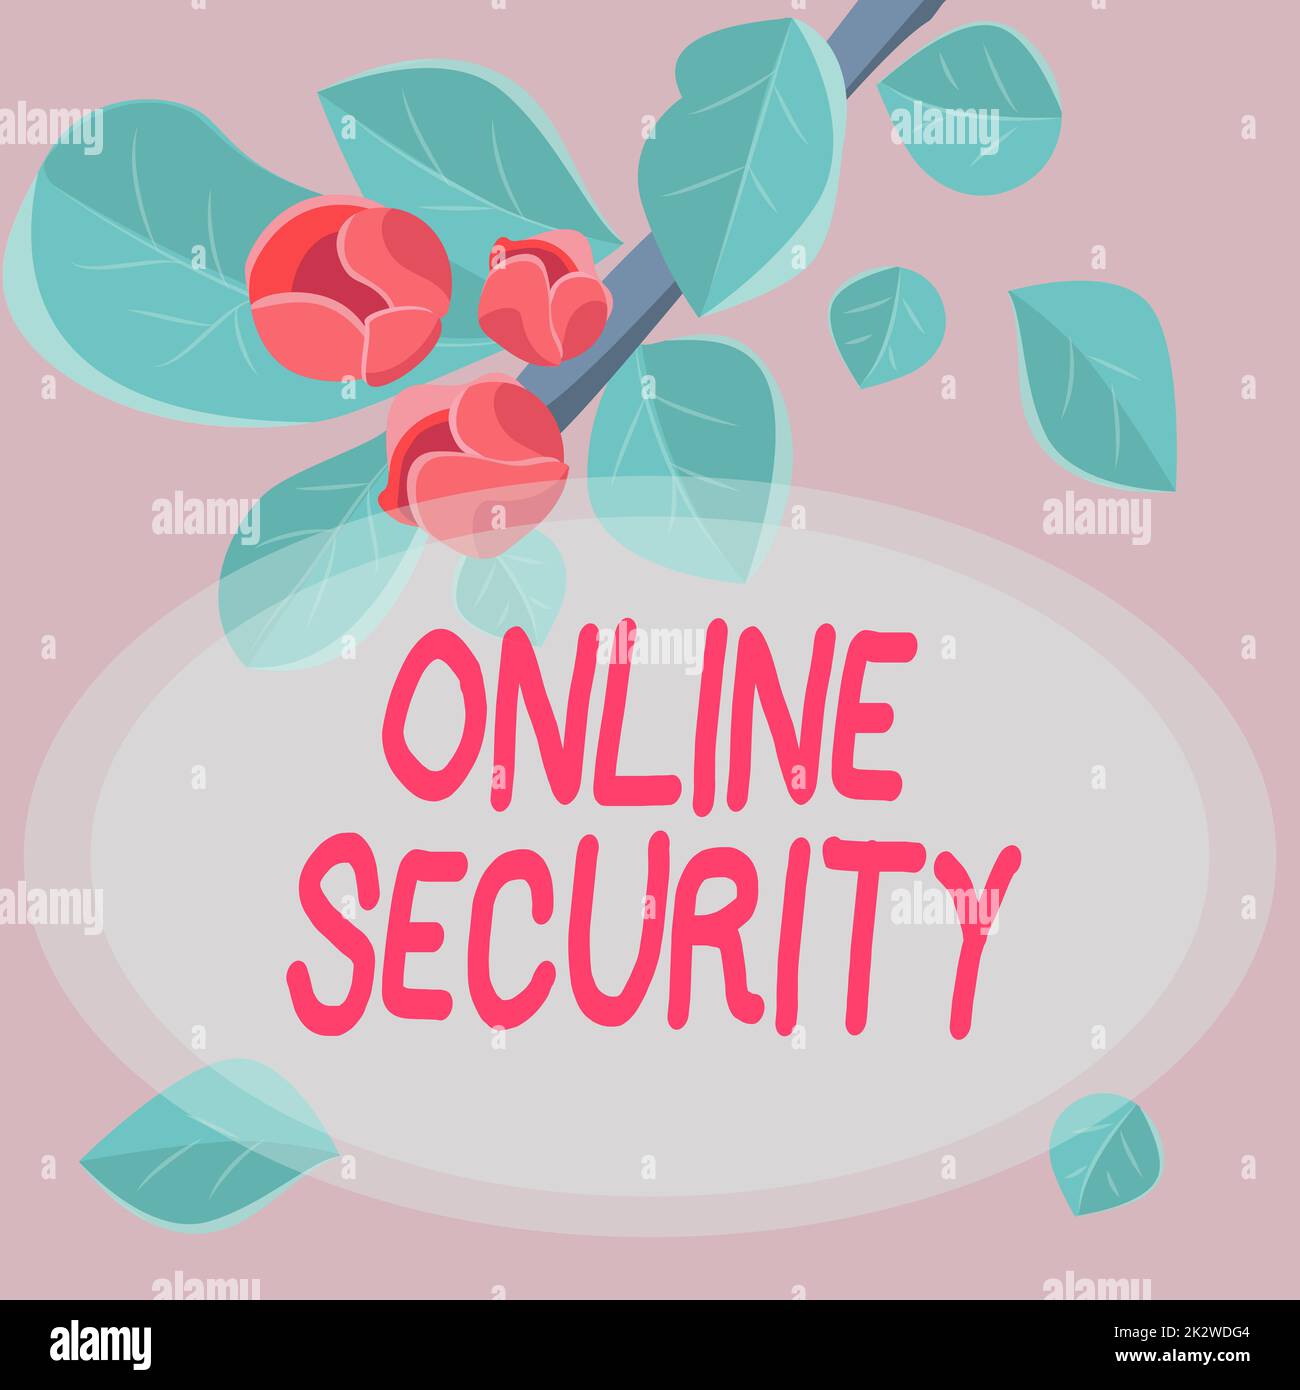 Handschriftliches Schild Online-Sicherheit. Regeln für Geschäftskonzepte zum Schutz vor Angriffen über das Internet Rahmen mit farbenfrohen Blumen und Blattwerk, die harmonisch angeordnet sind. Stockfoto